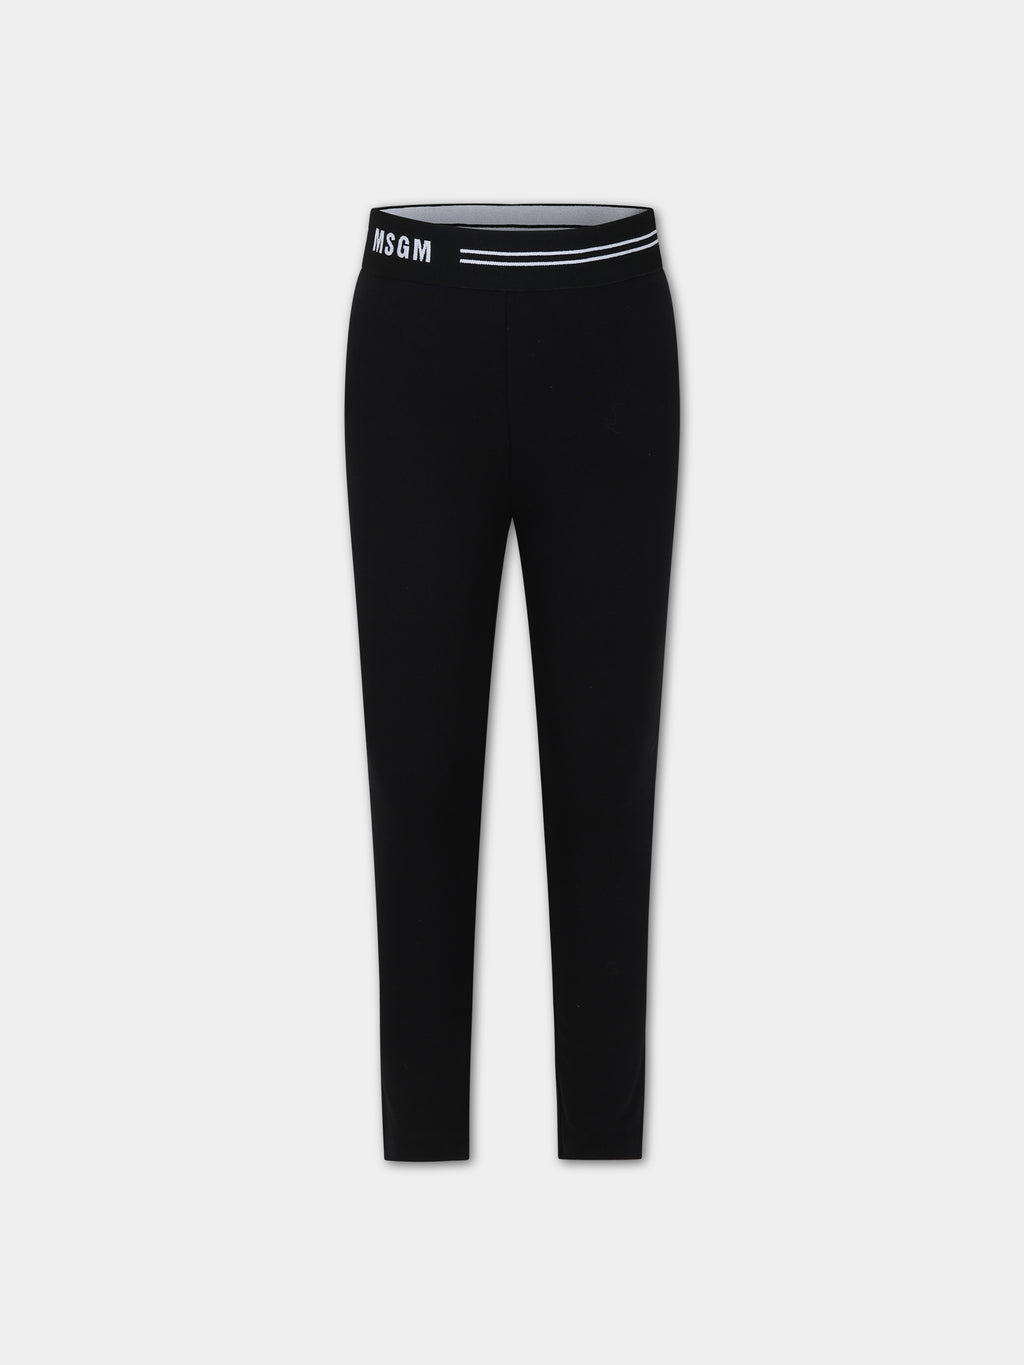 Black leggings for girl with logo